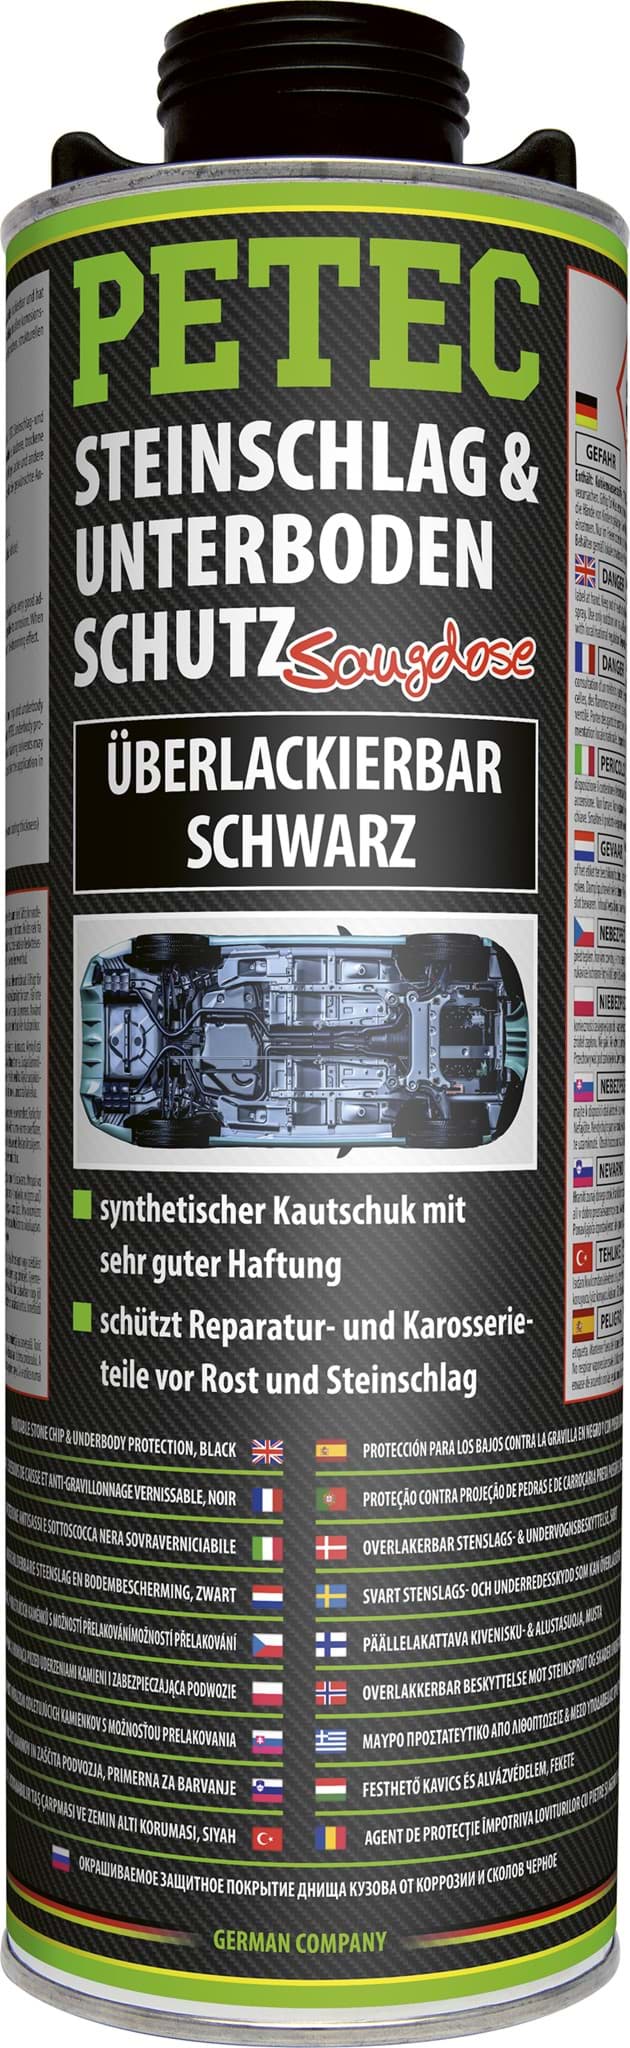 Petec Unterbodenschutz UBS schwarz überlackierbar 1liter resmi